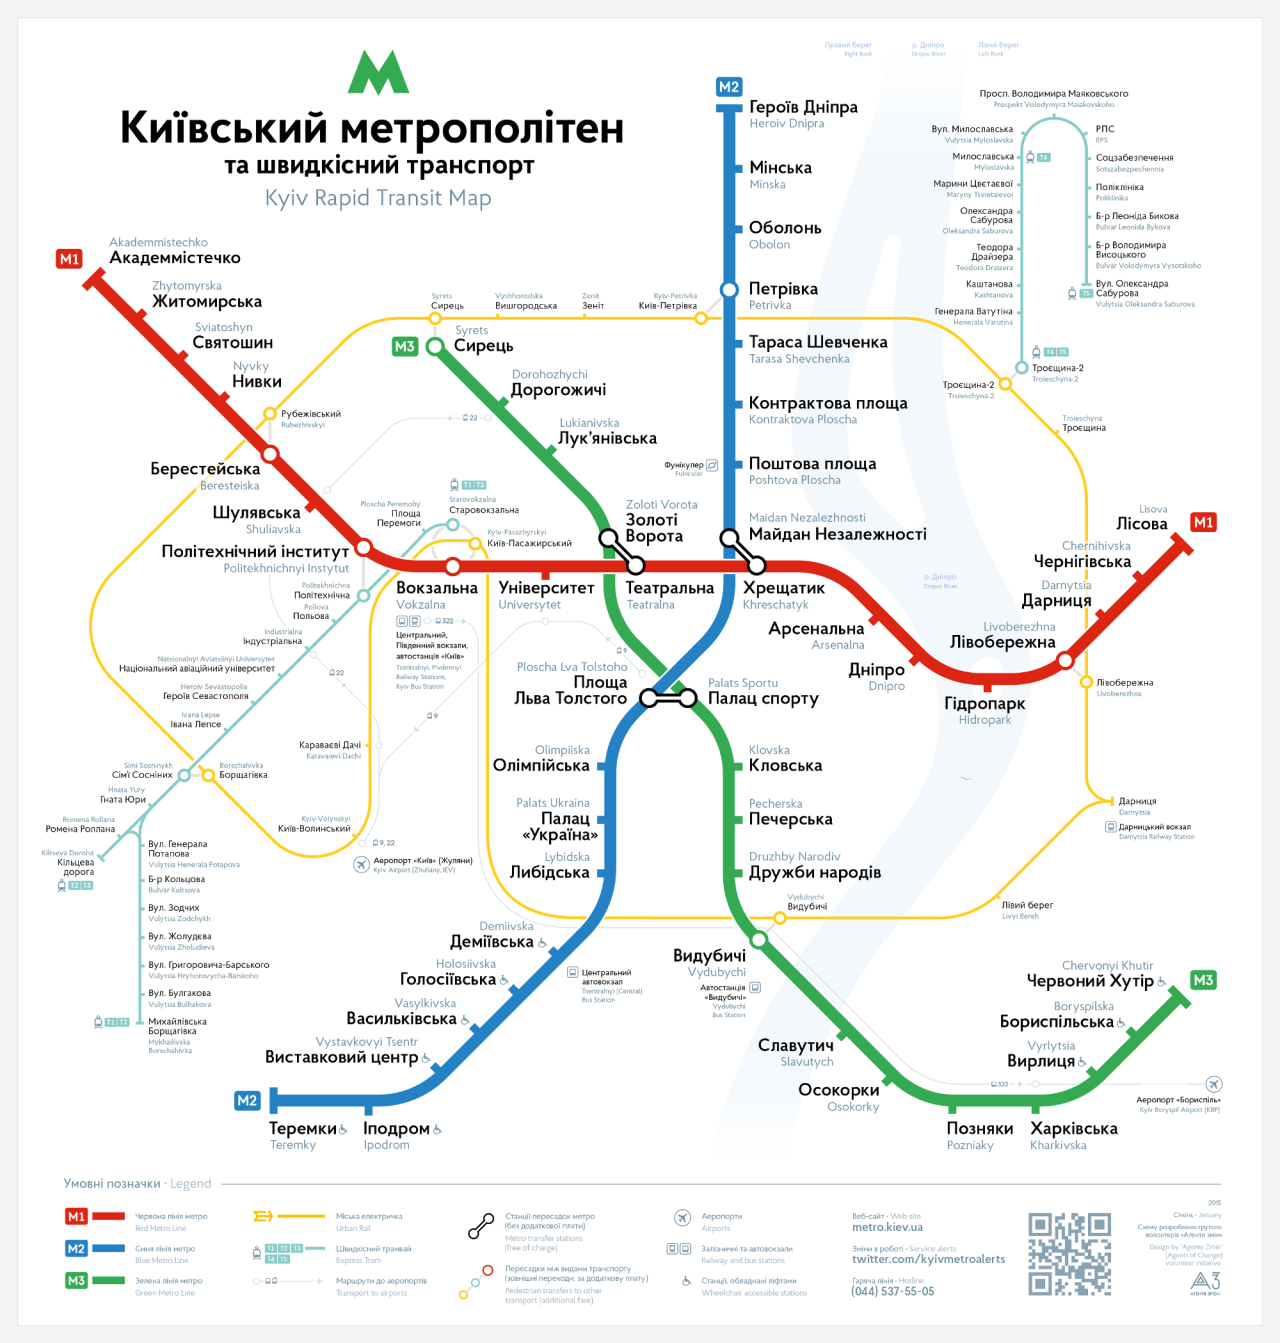 Схема киевского метрополитена, разработанная "Агентами змін"